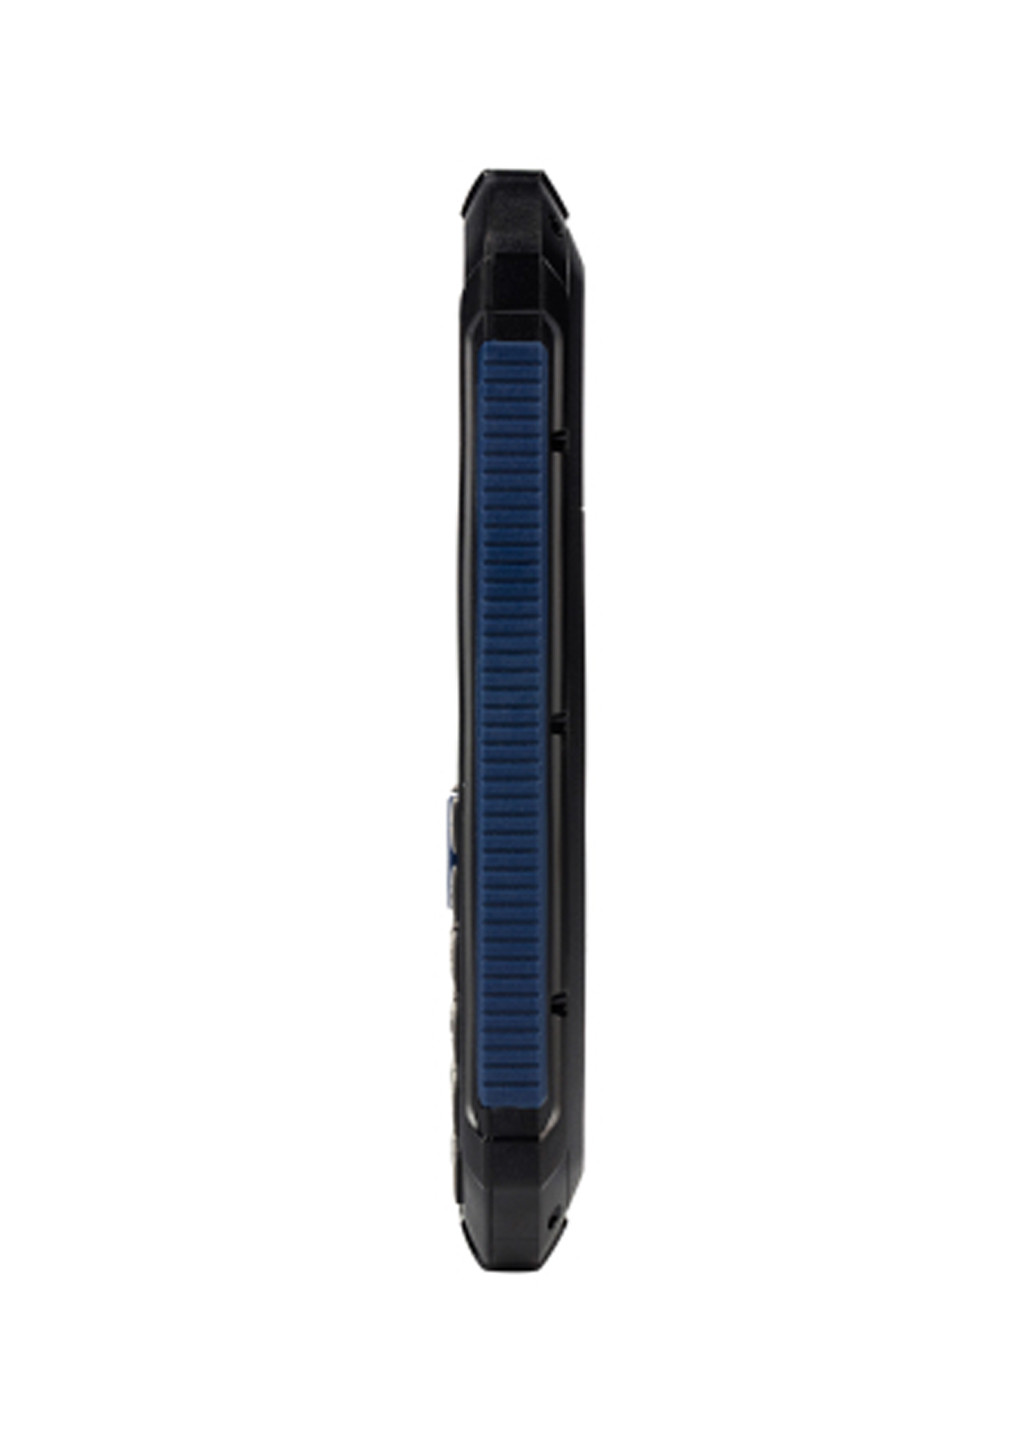 Мобильный телефон Nomi i245 x-treme black blue (134344432)